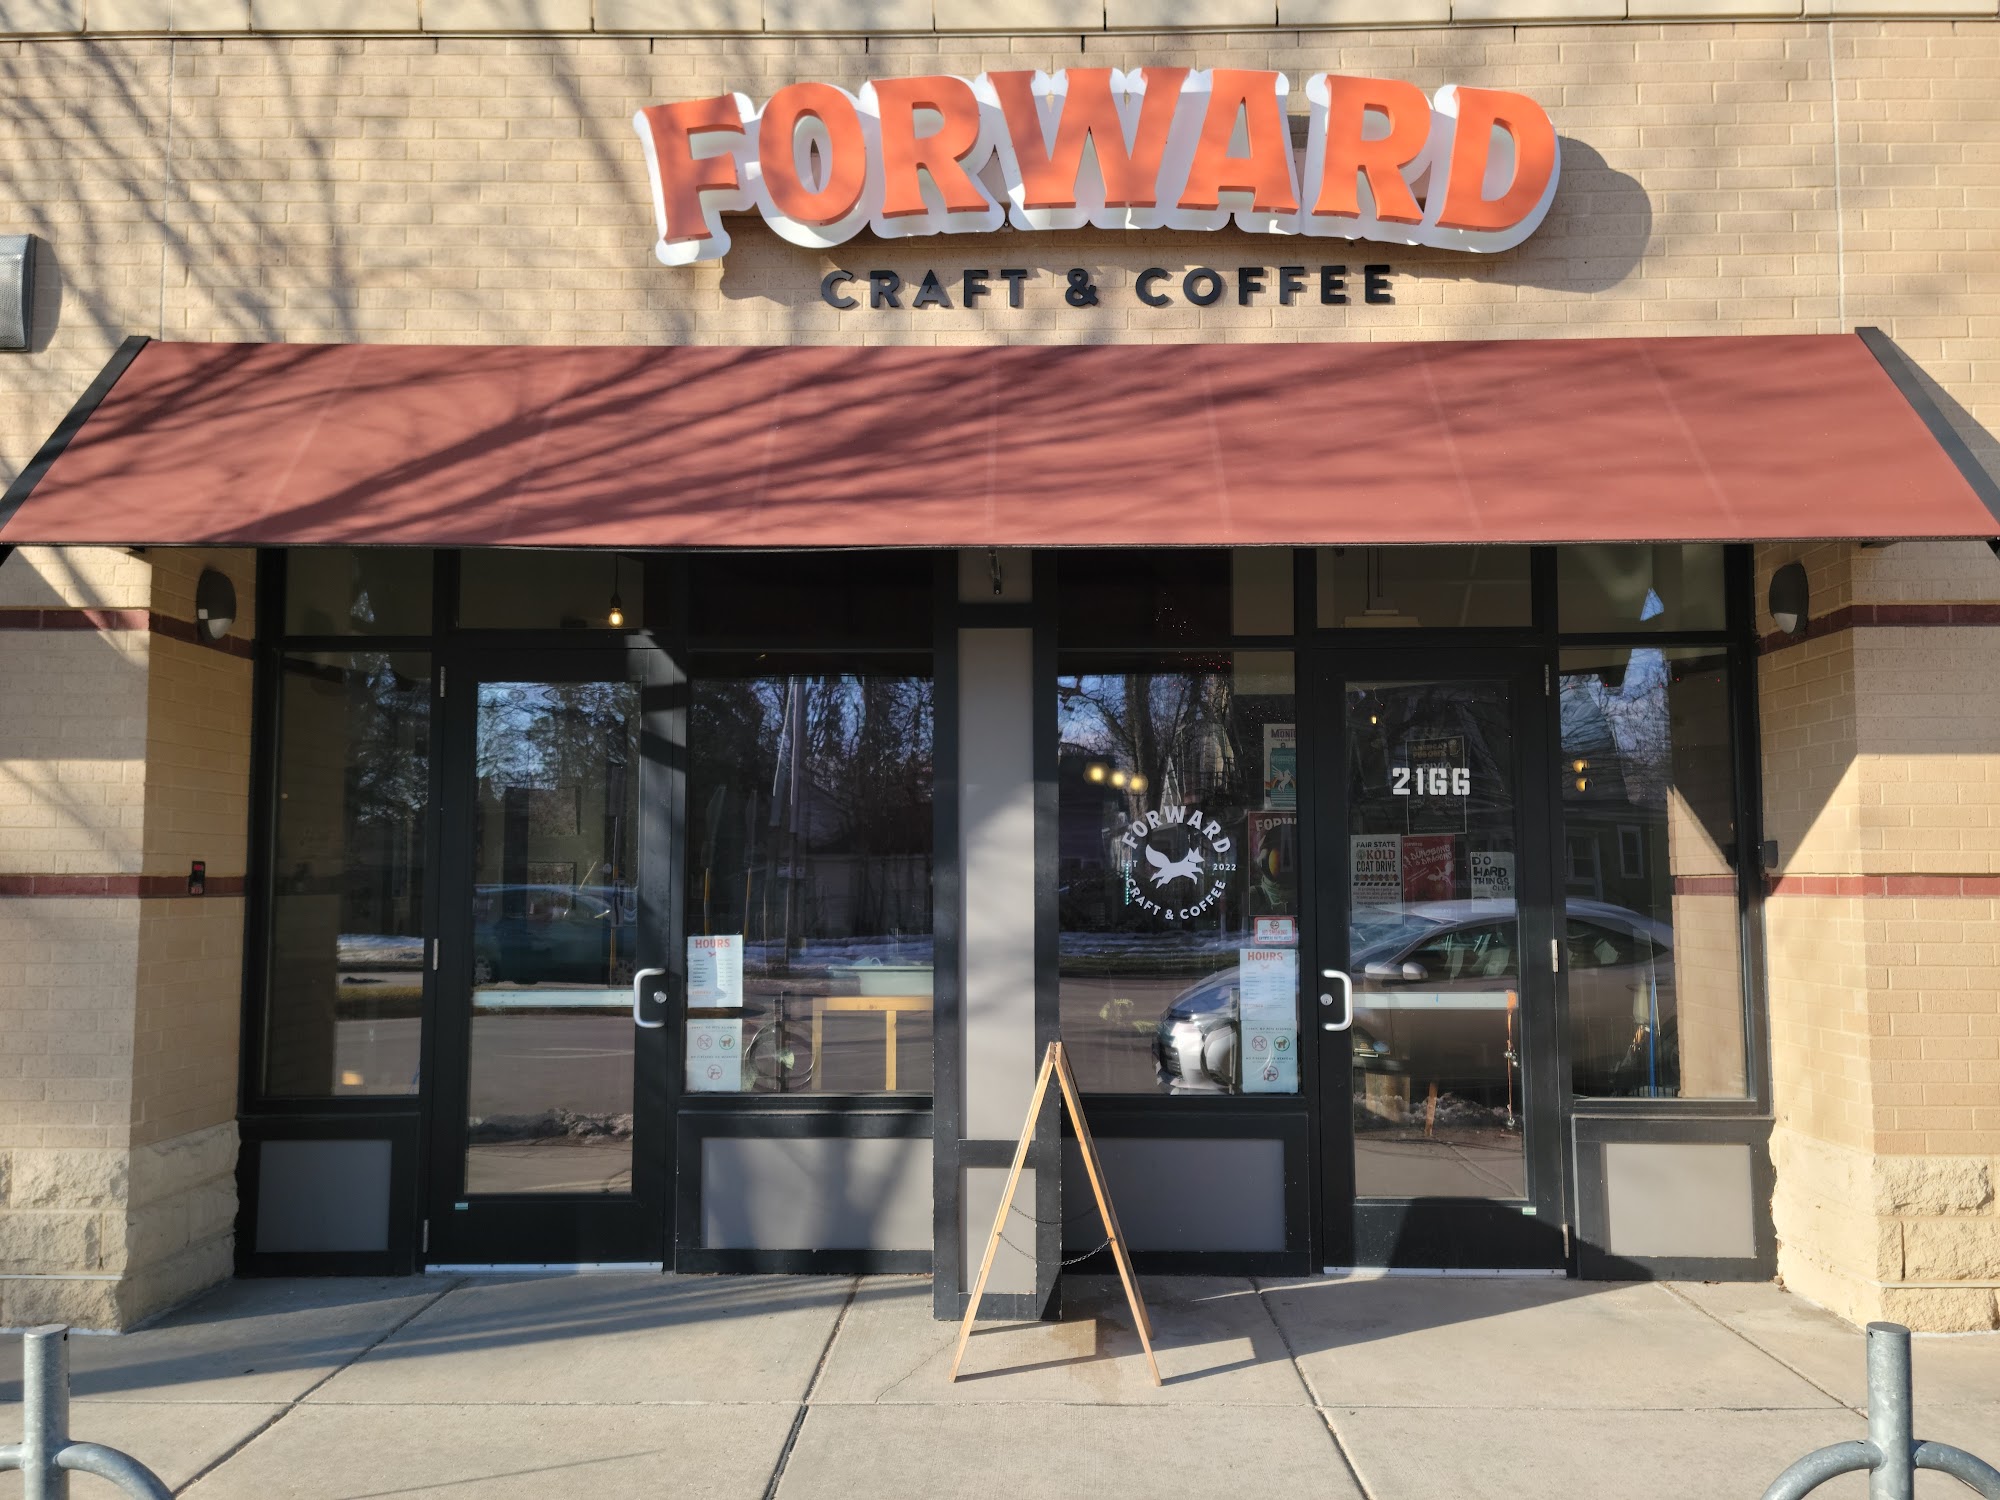 Forward Craft & Coffee